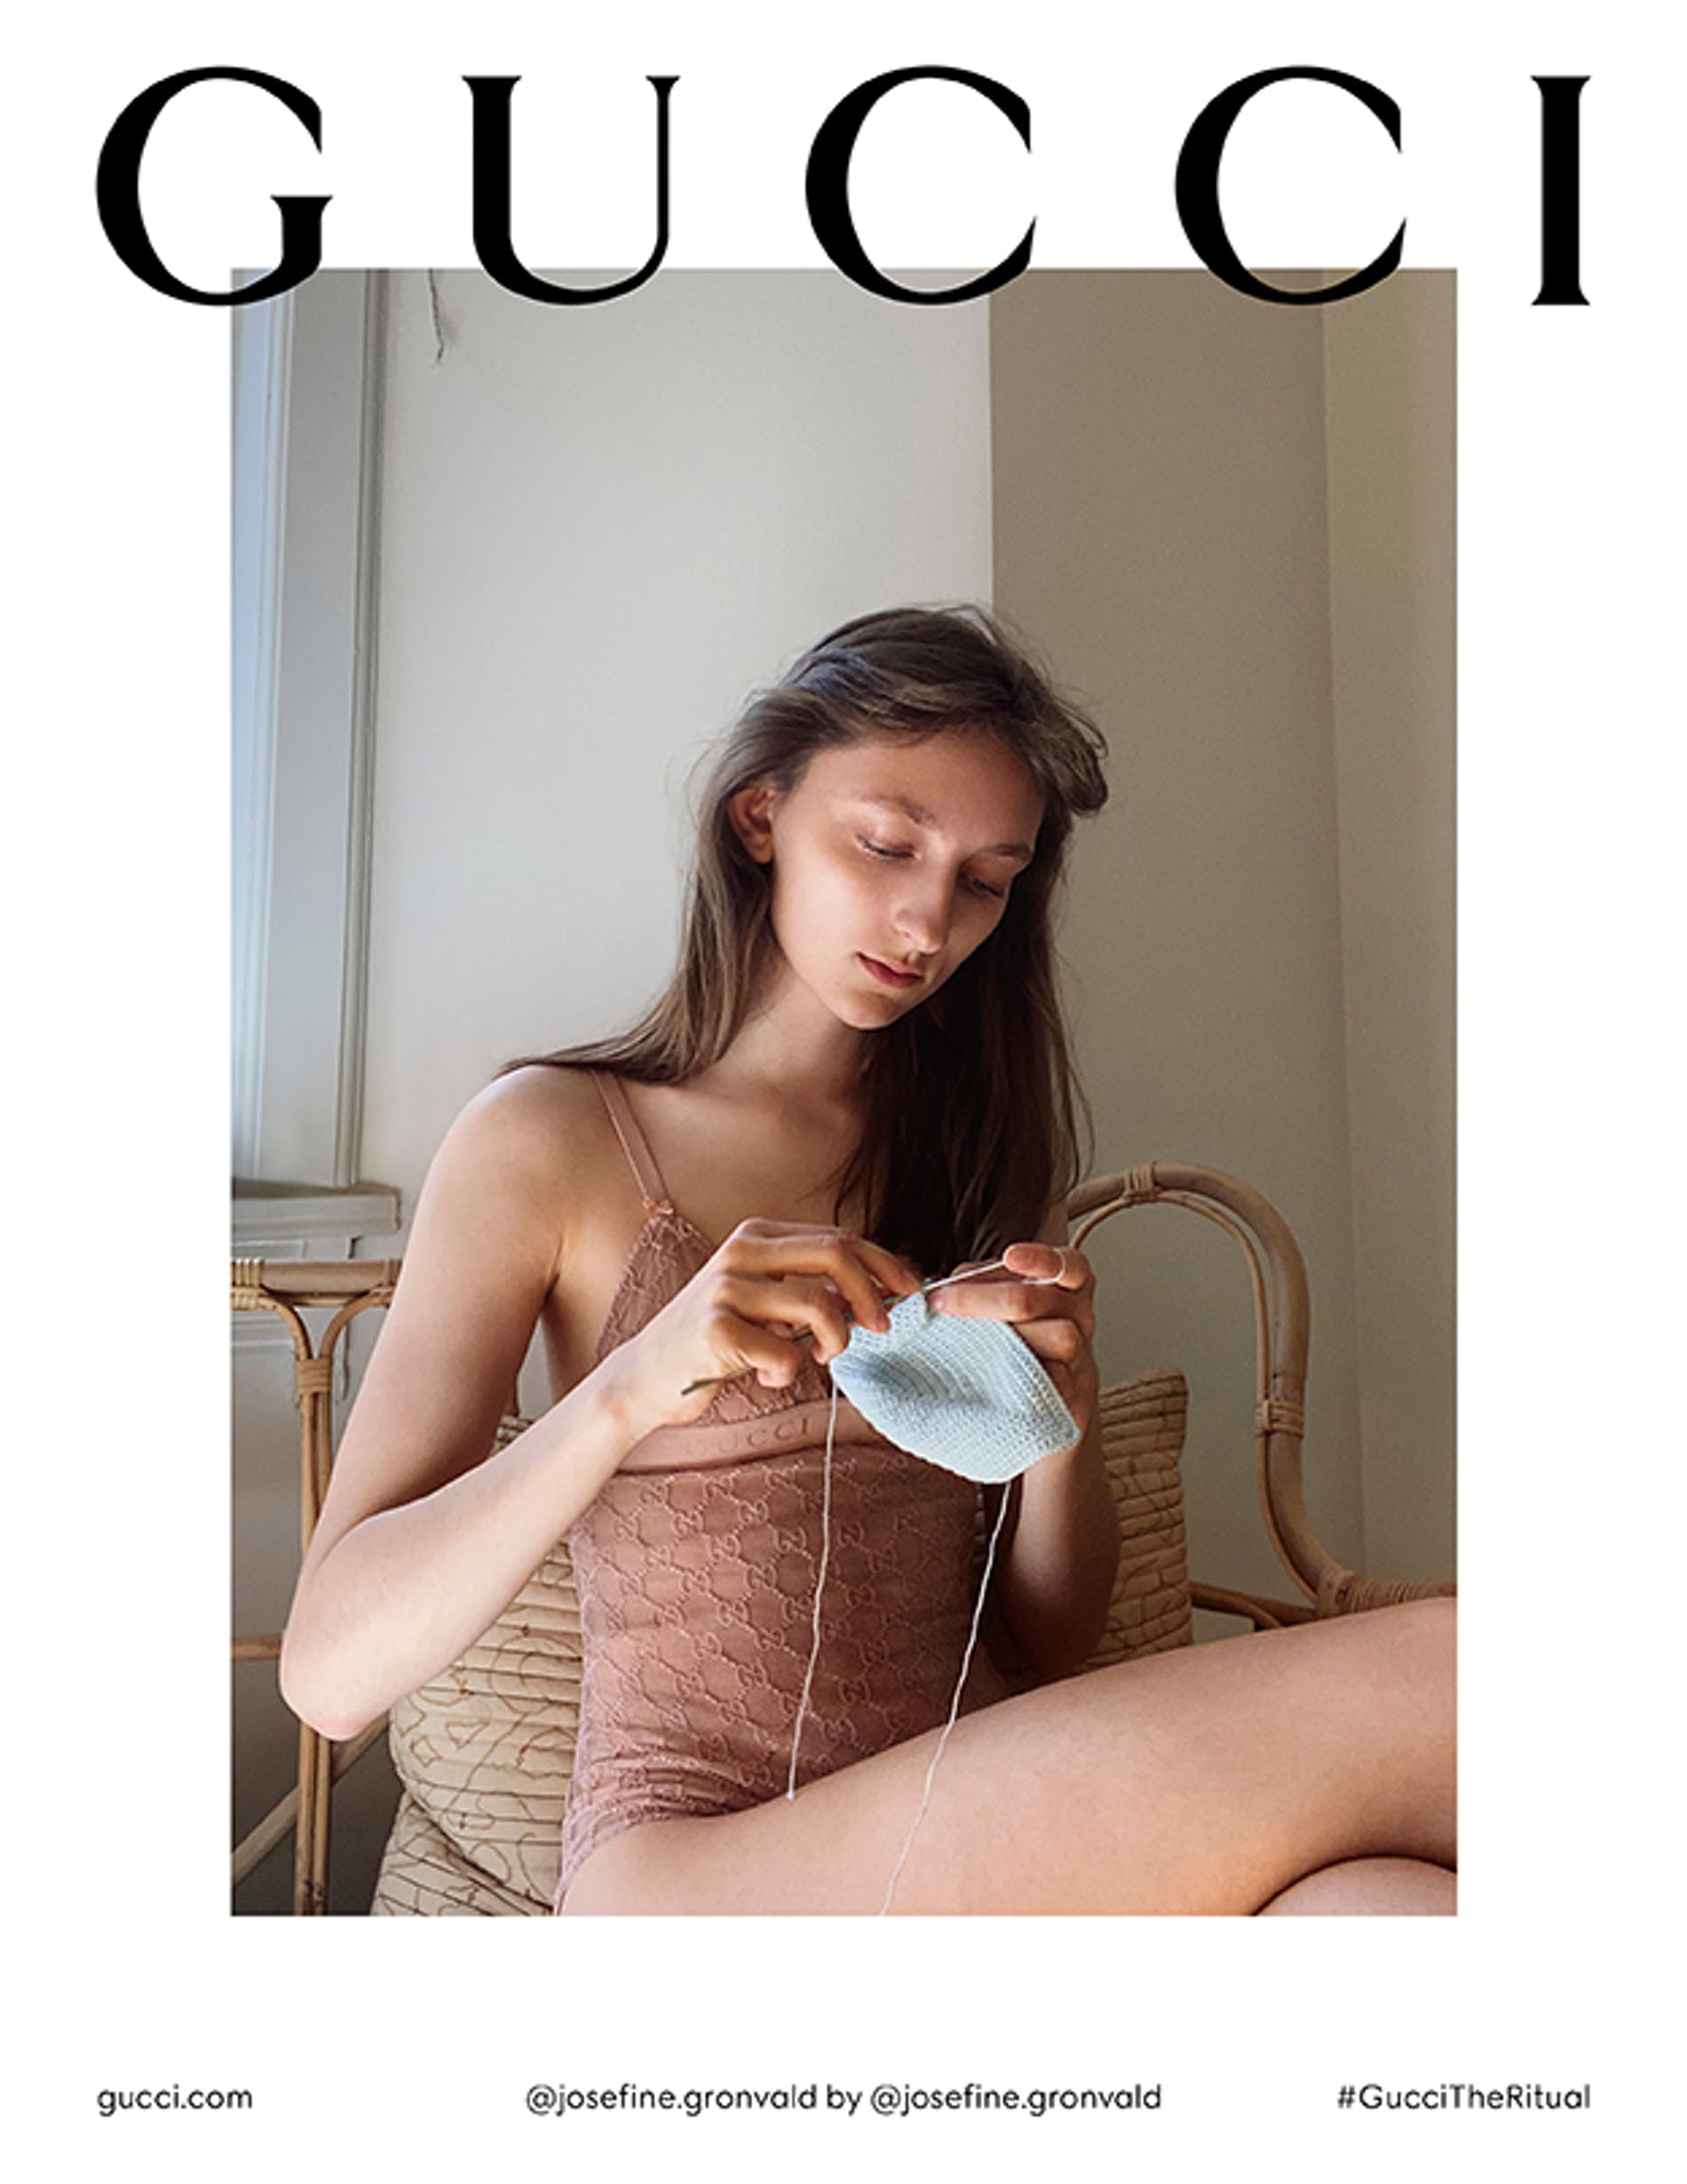 Gucci campaign